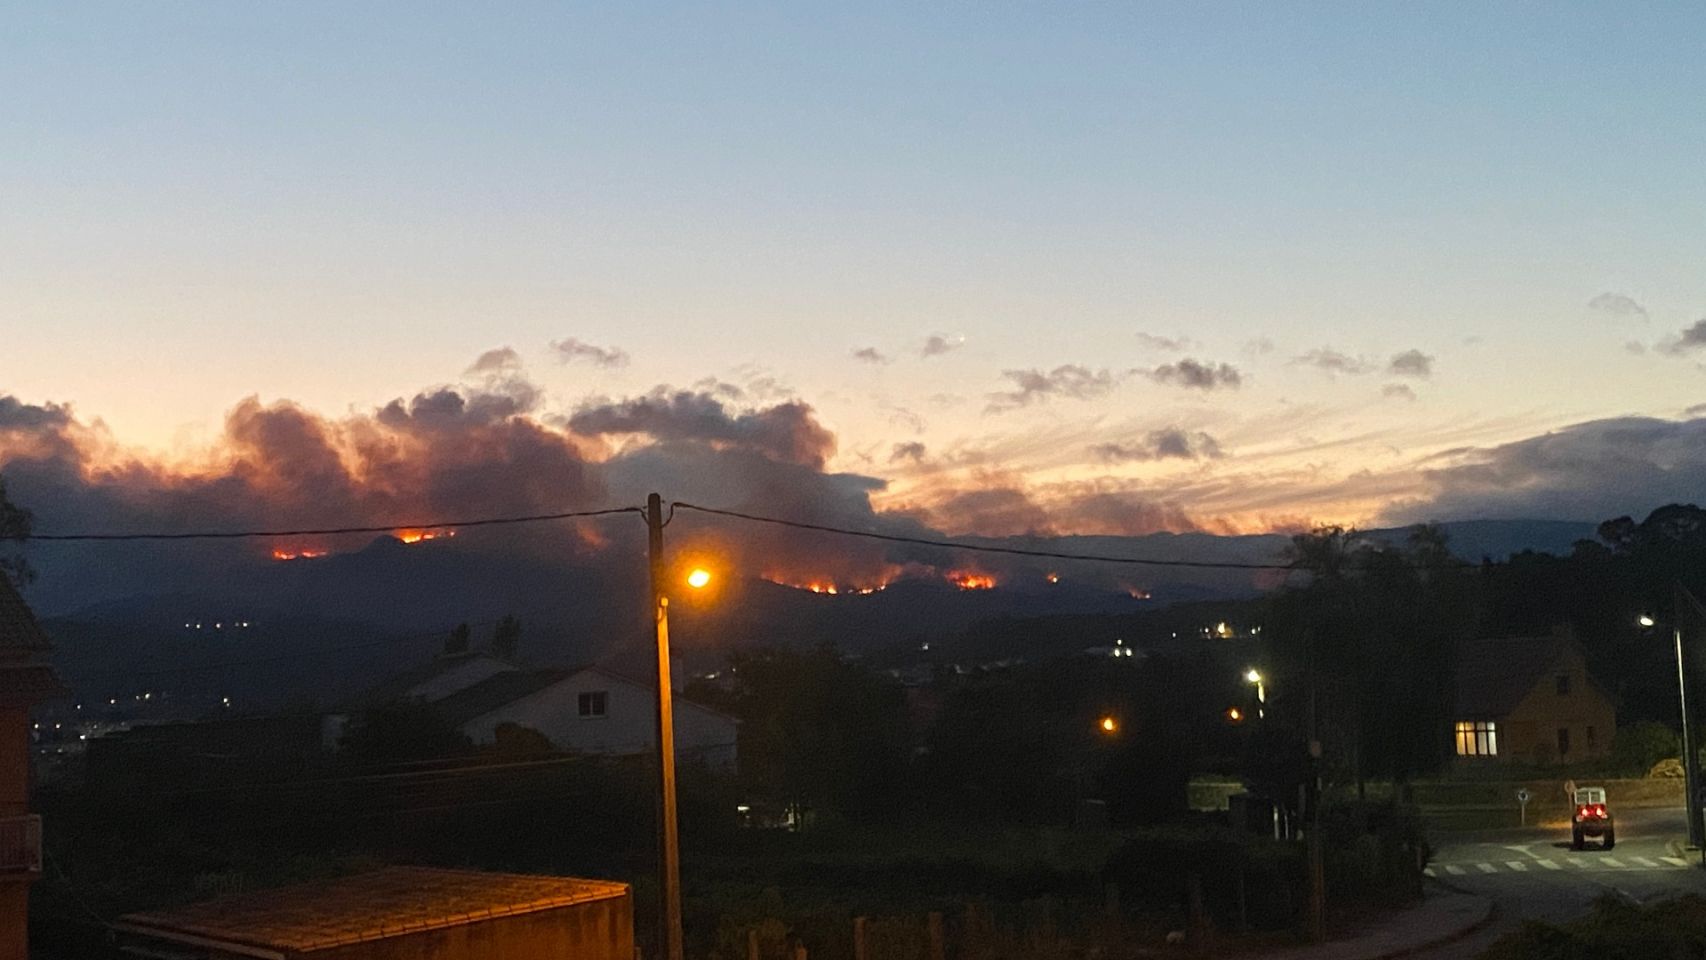 Incendio activo en la parroquia de Cures, Boiro (A Coruña) a las 22:30 del jueves